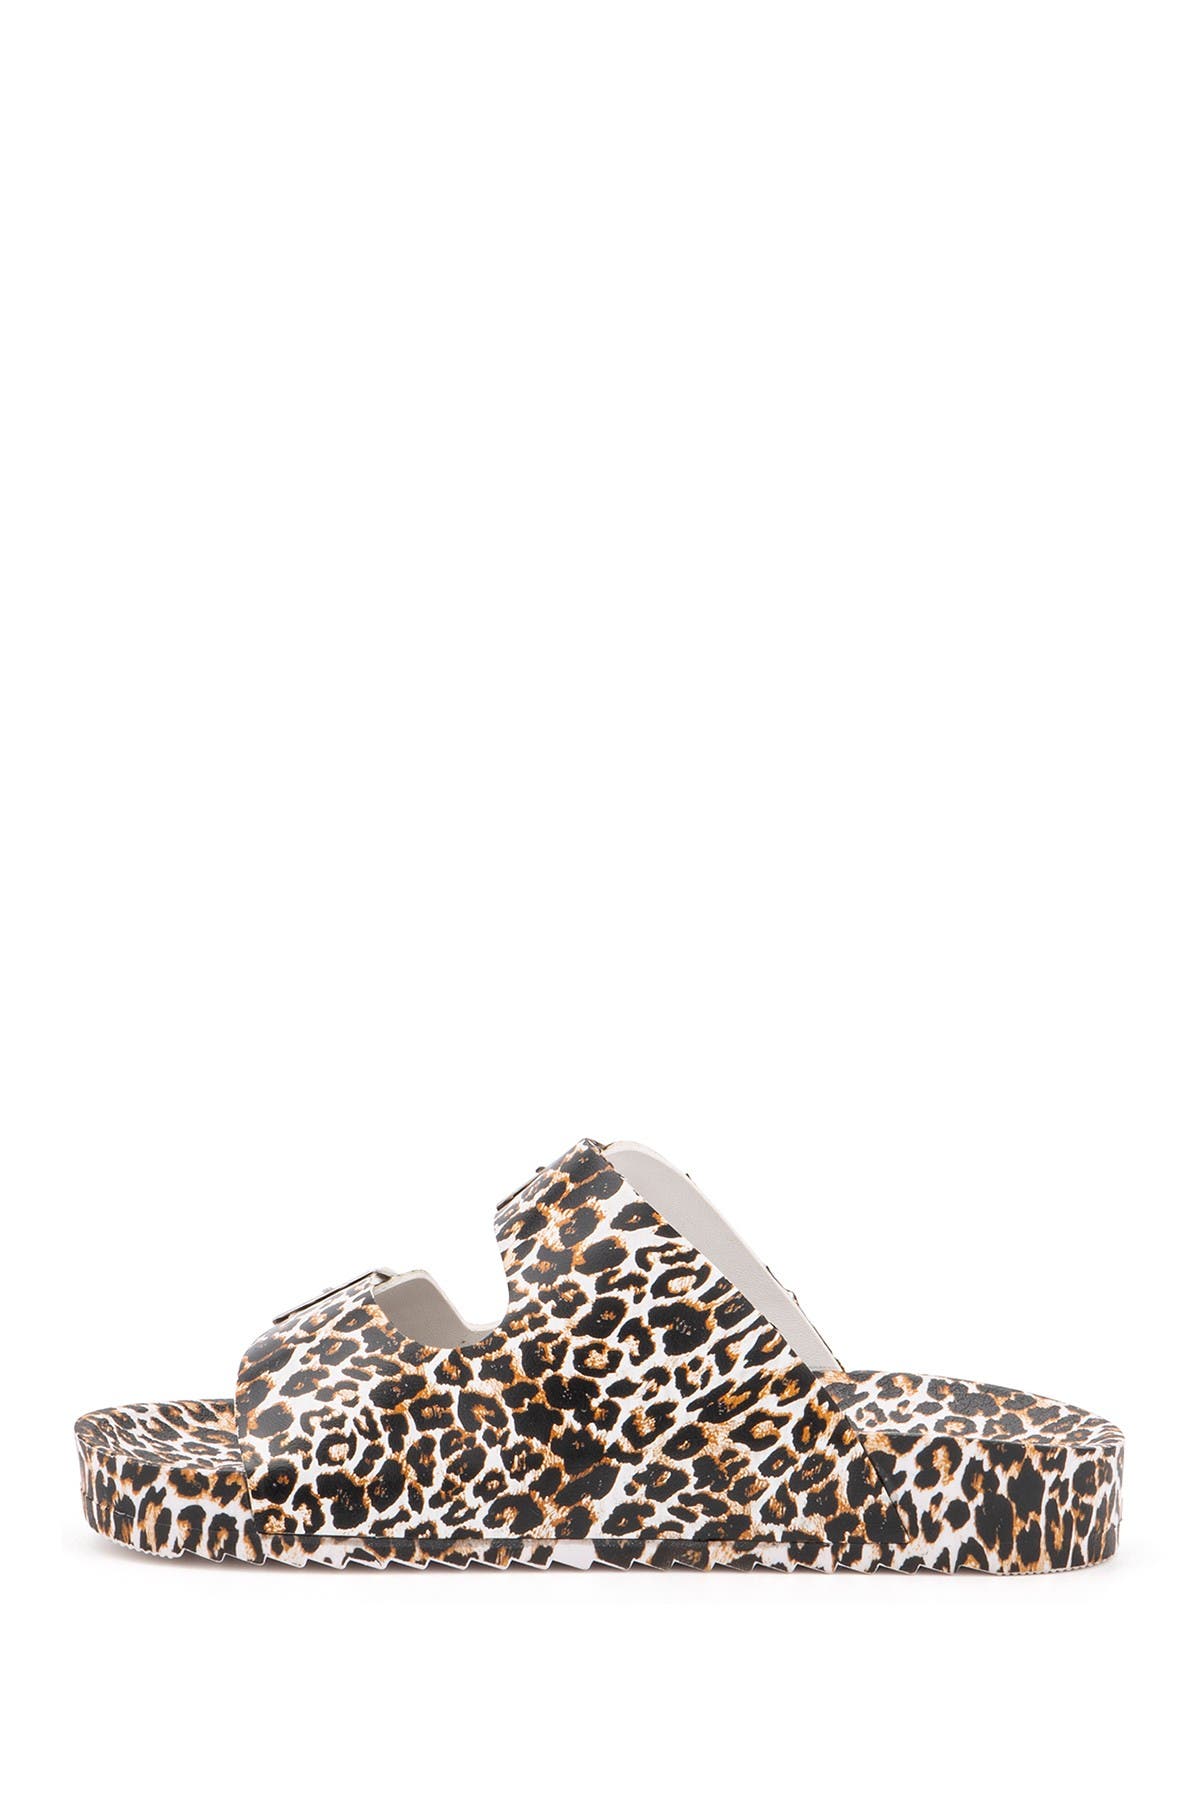 Olivia Miller Kids' Omg Leopard Double Buckle Sandal